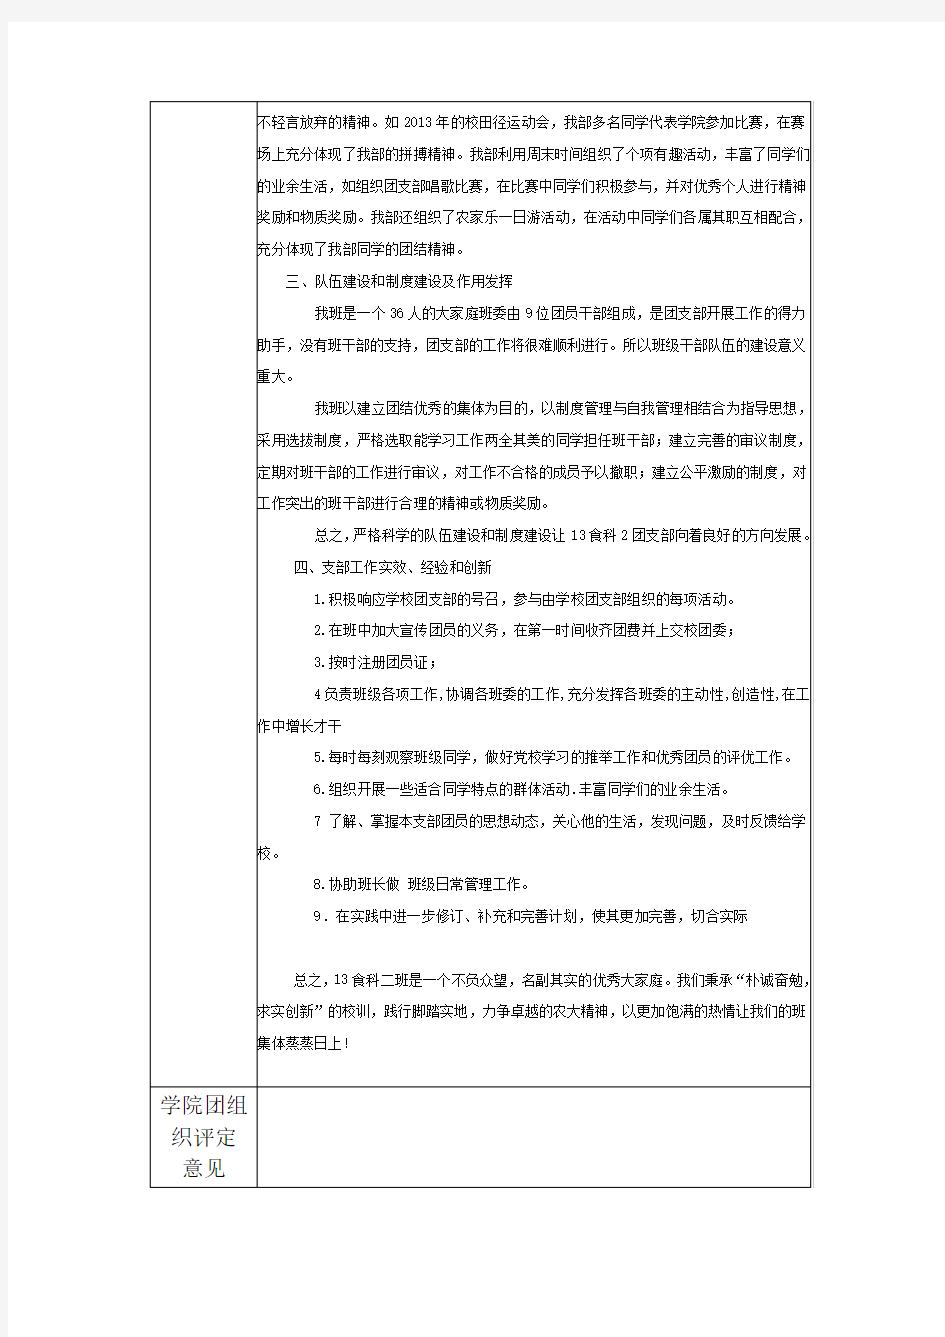 《湖南农业大学团支部考评自评表》